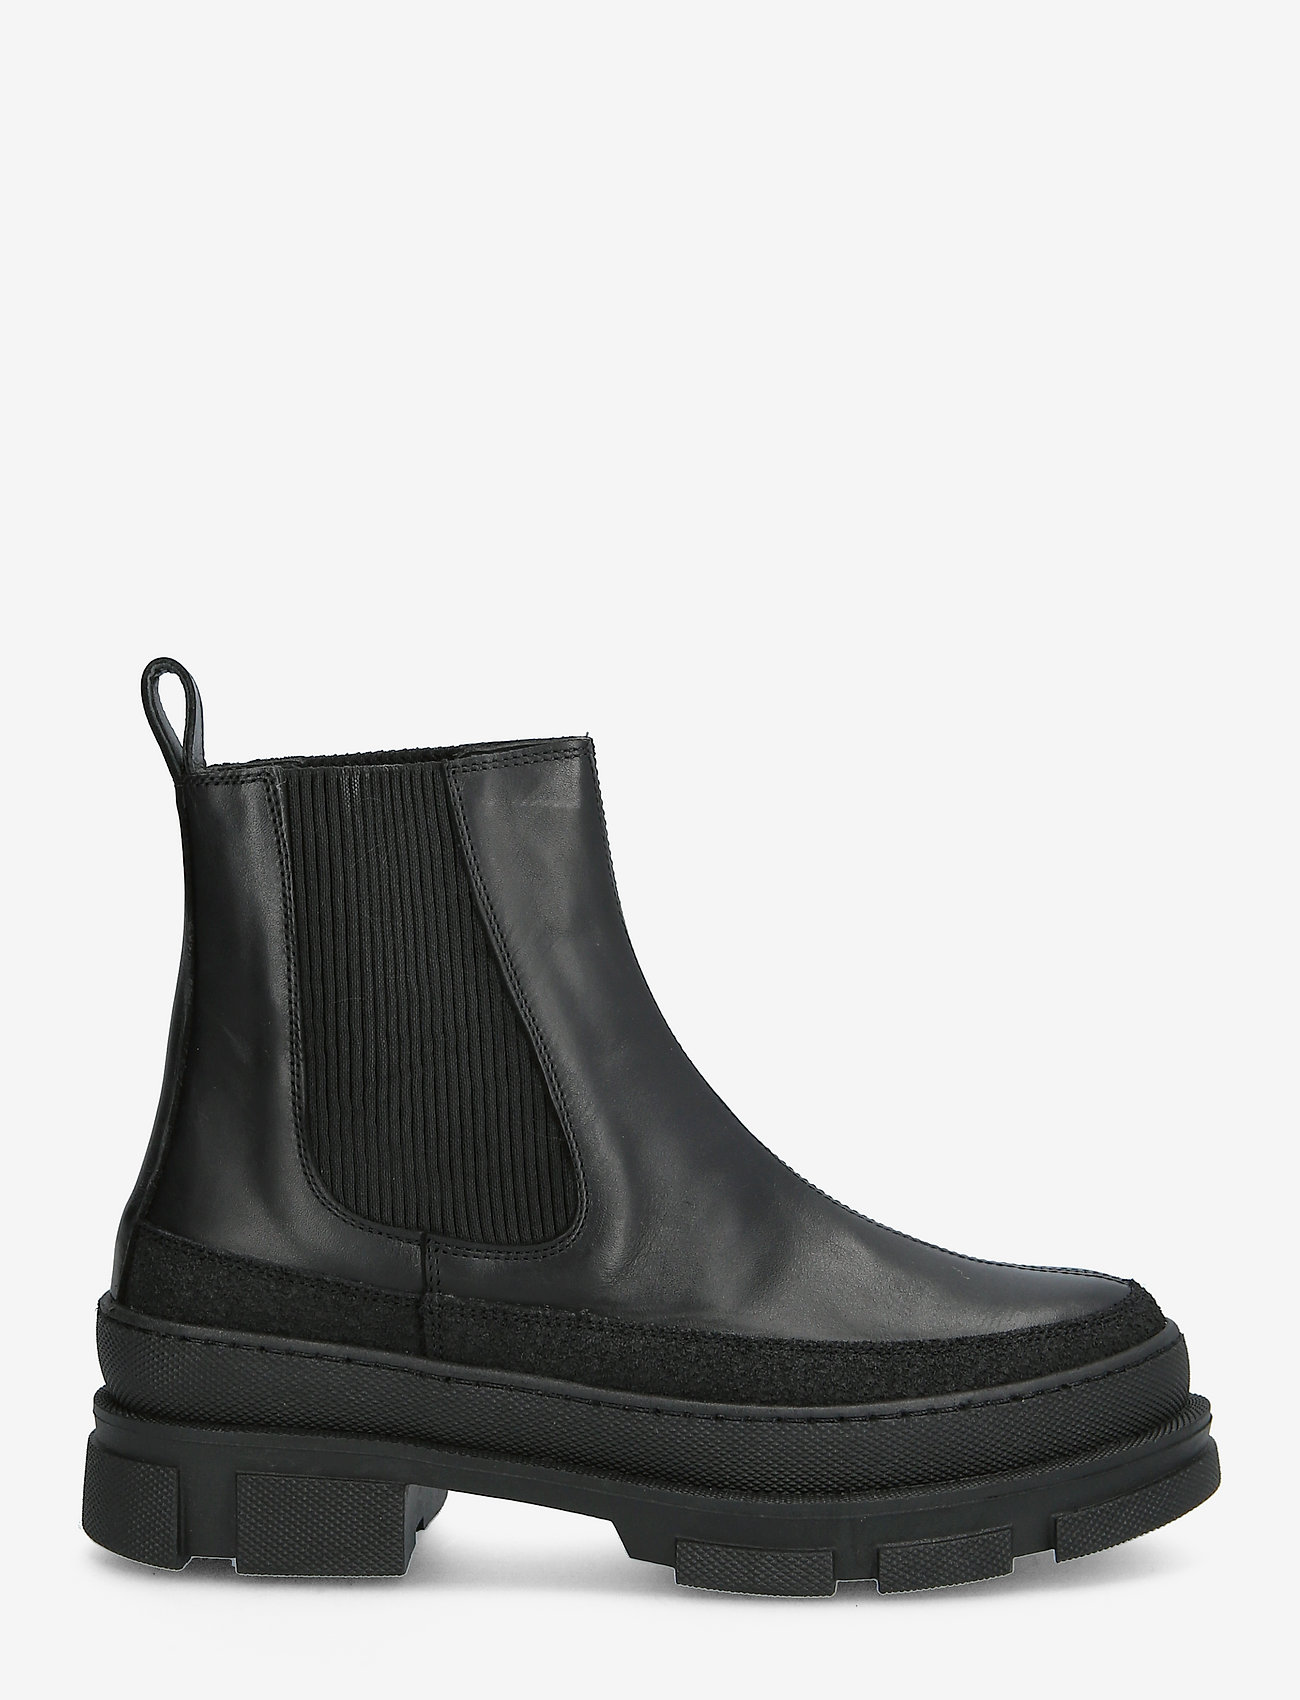 ANGULUS - Boots - flat - chelsea-saapad - 1321/1605/019 black/black/blac - 1